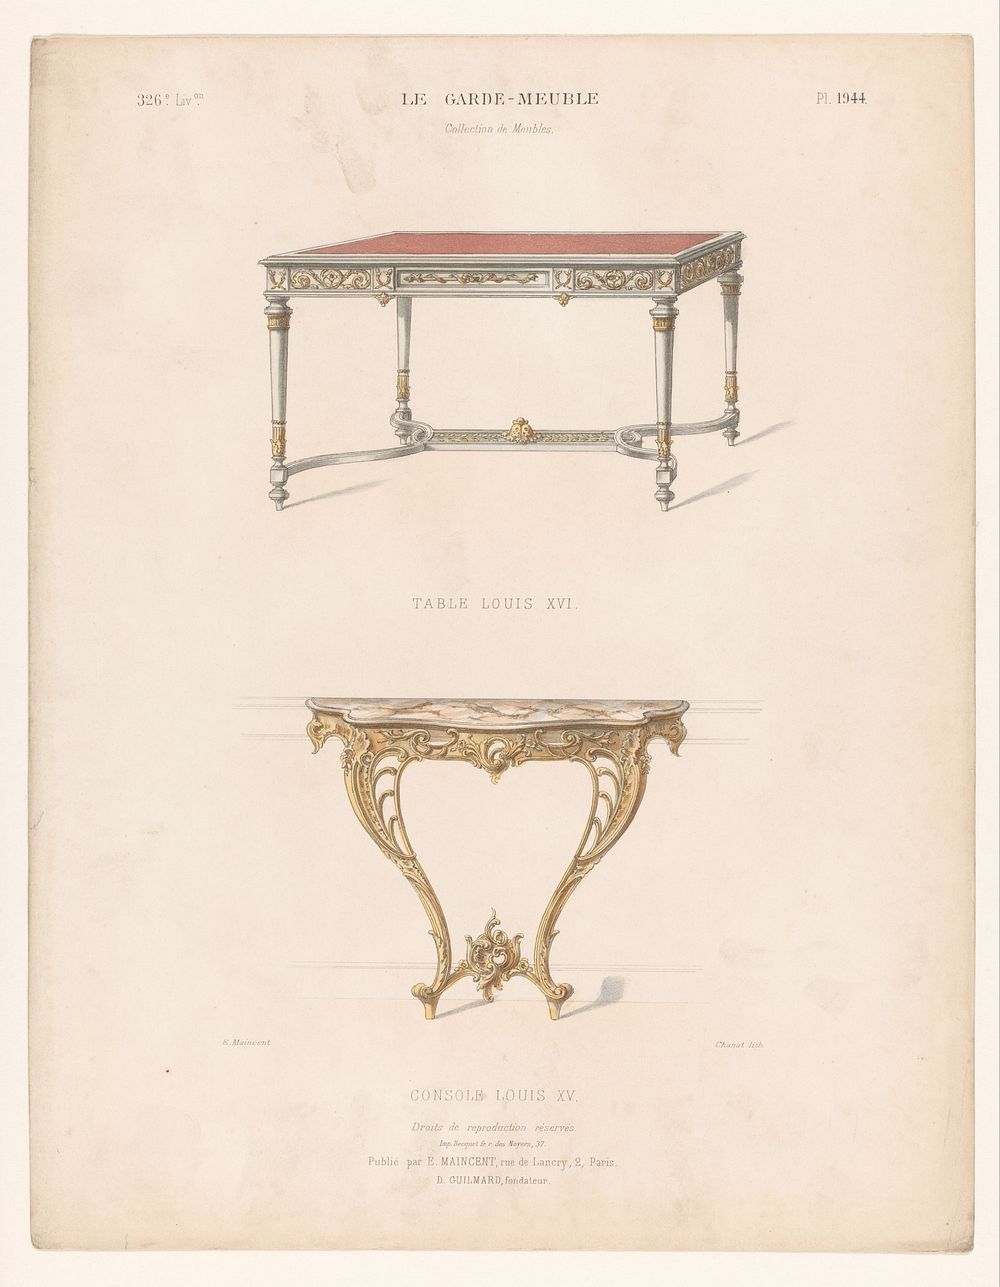 Twee tafels (1885 - 1895) by Chanat, Becquet frères, Eugène Maincent and Désiré Guilmard